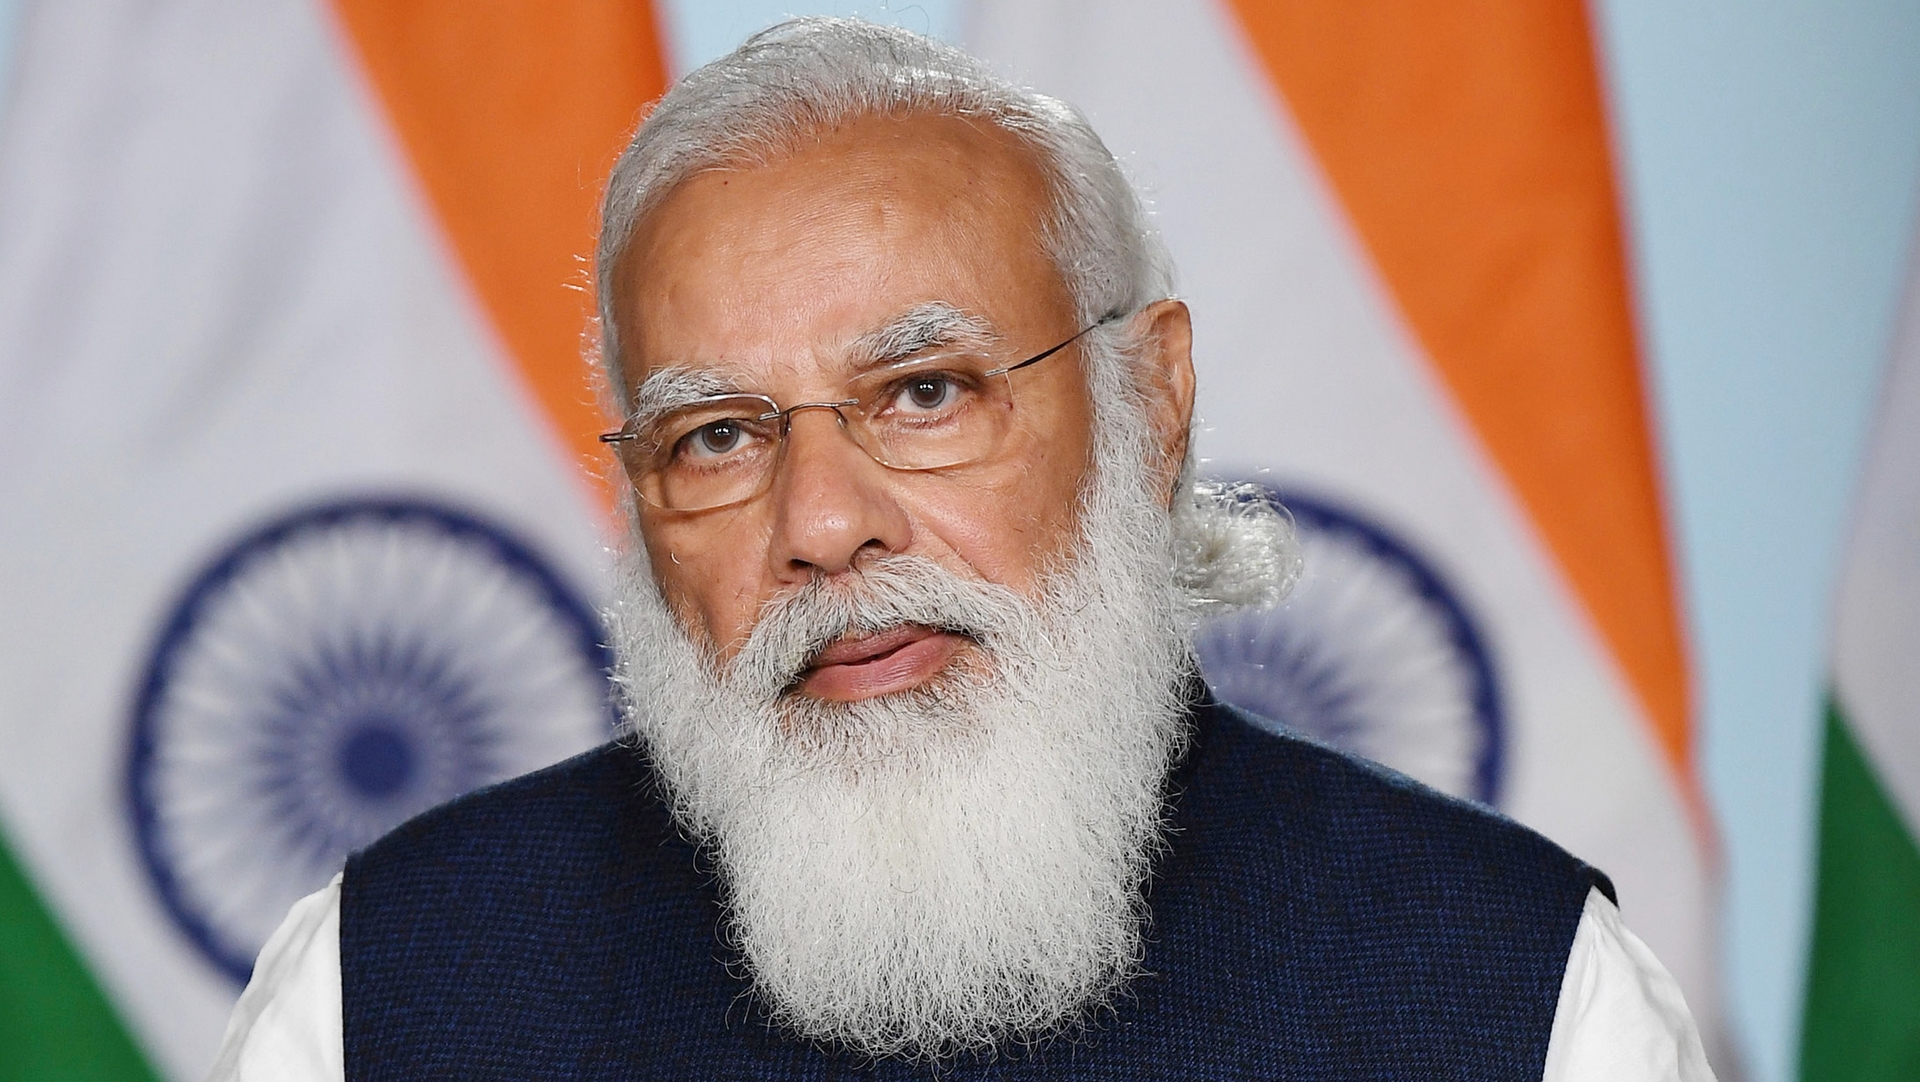 Le premier ministre indien Narendra Modi suit une ligne nationaliste hindoue  | © Wikimedia/Prime Minister's Office